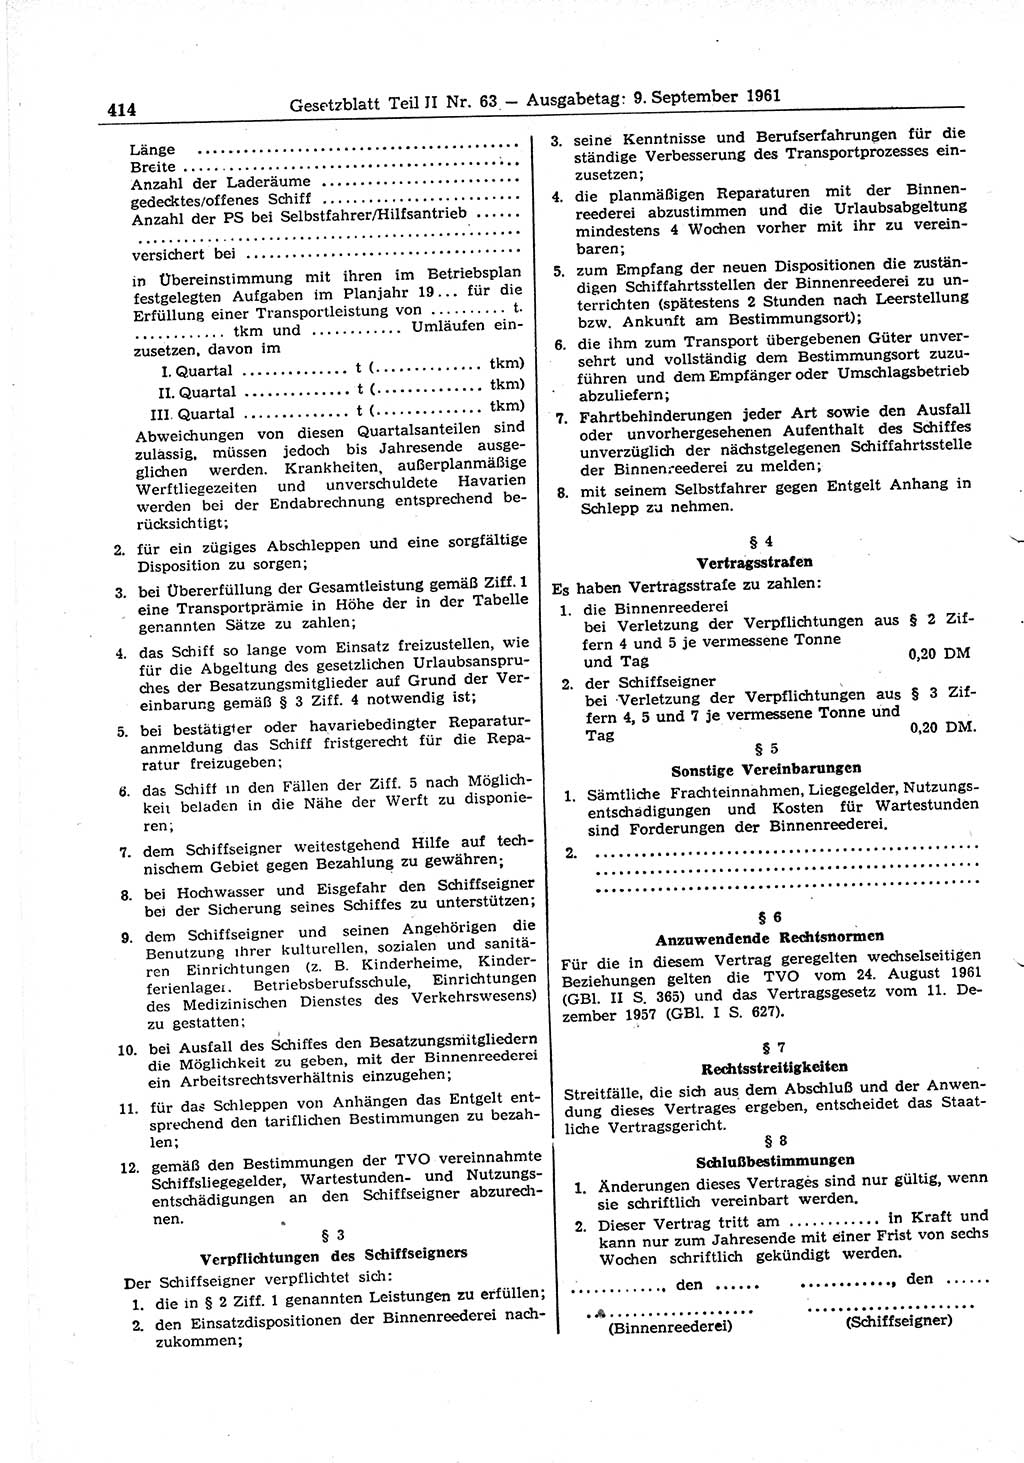 Gesetzblatt (GBl.) der Deutschen Demokratischen Republik (DDR) Teil ⅠⅠ 1961, Seite 414 (GBl. DDR ⅠⅠ 1961, S. 414)